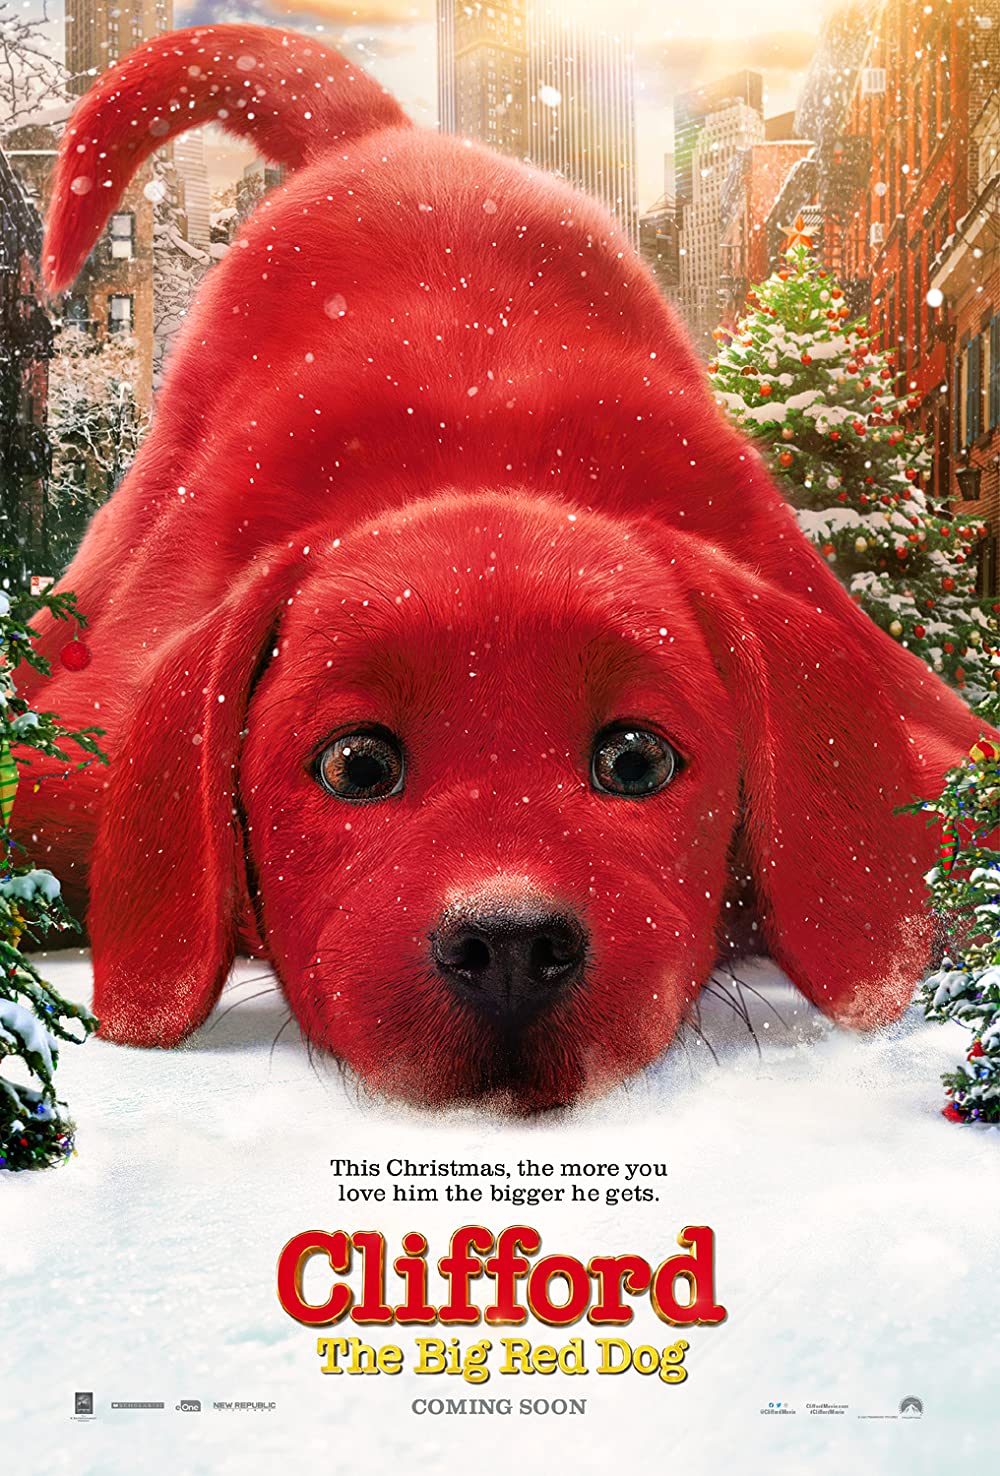 ดูหนังออนไลน์ฟรี ดูหนังฟรี Clifford the Big Red Dog 2021 037moviefree